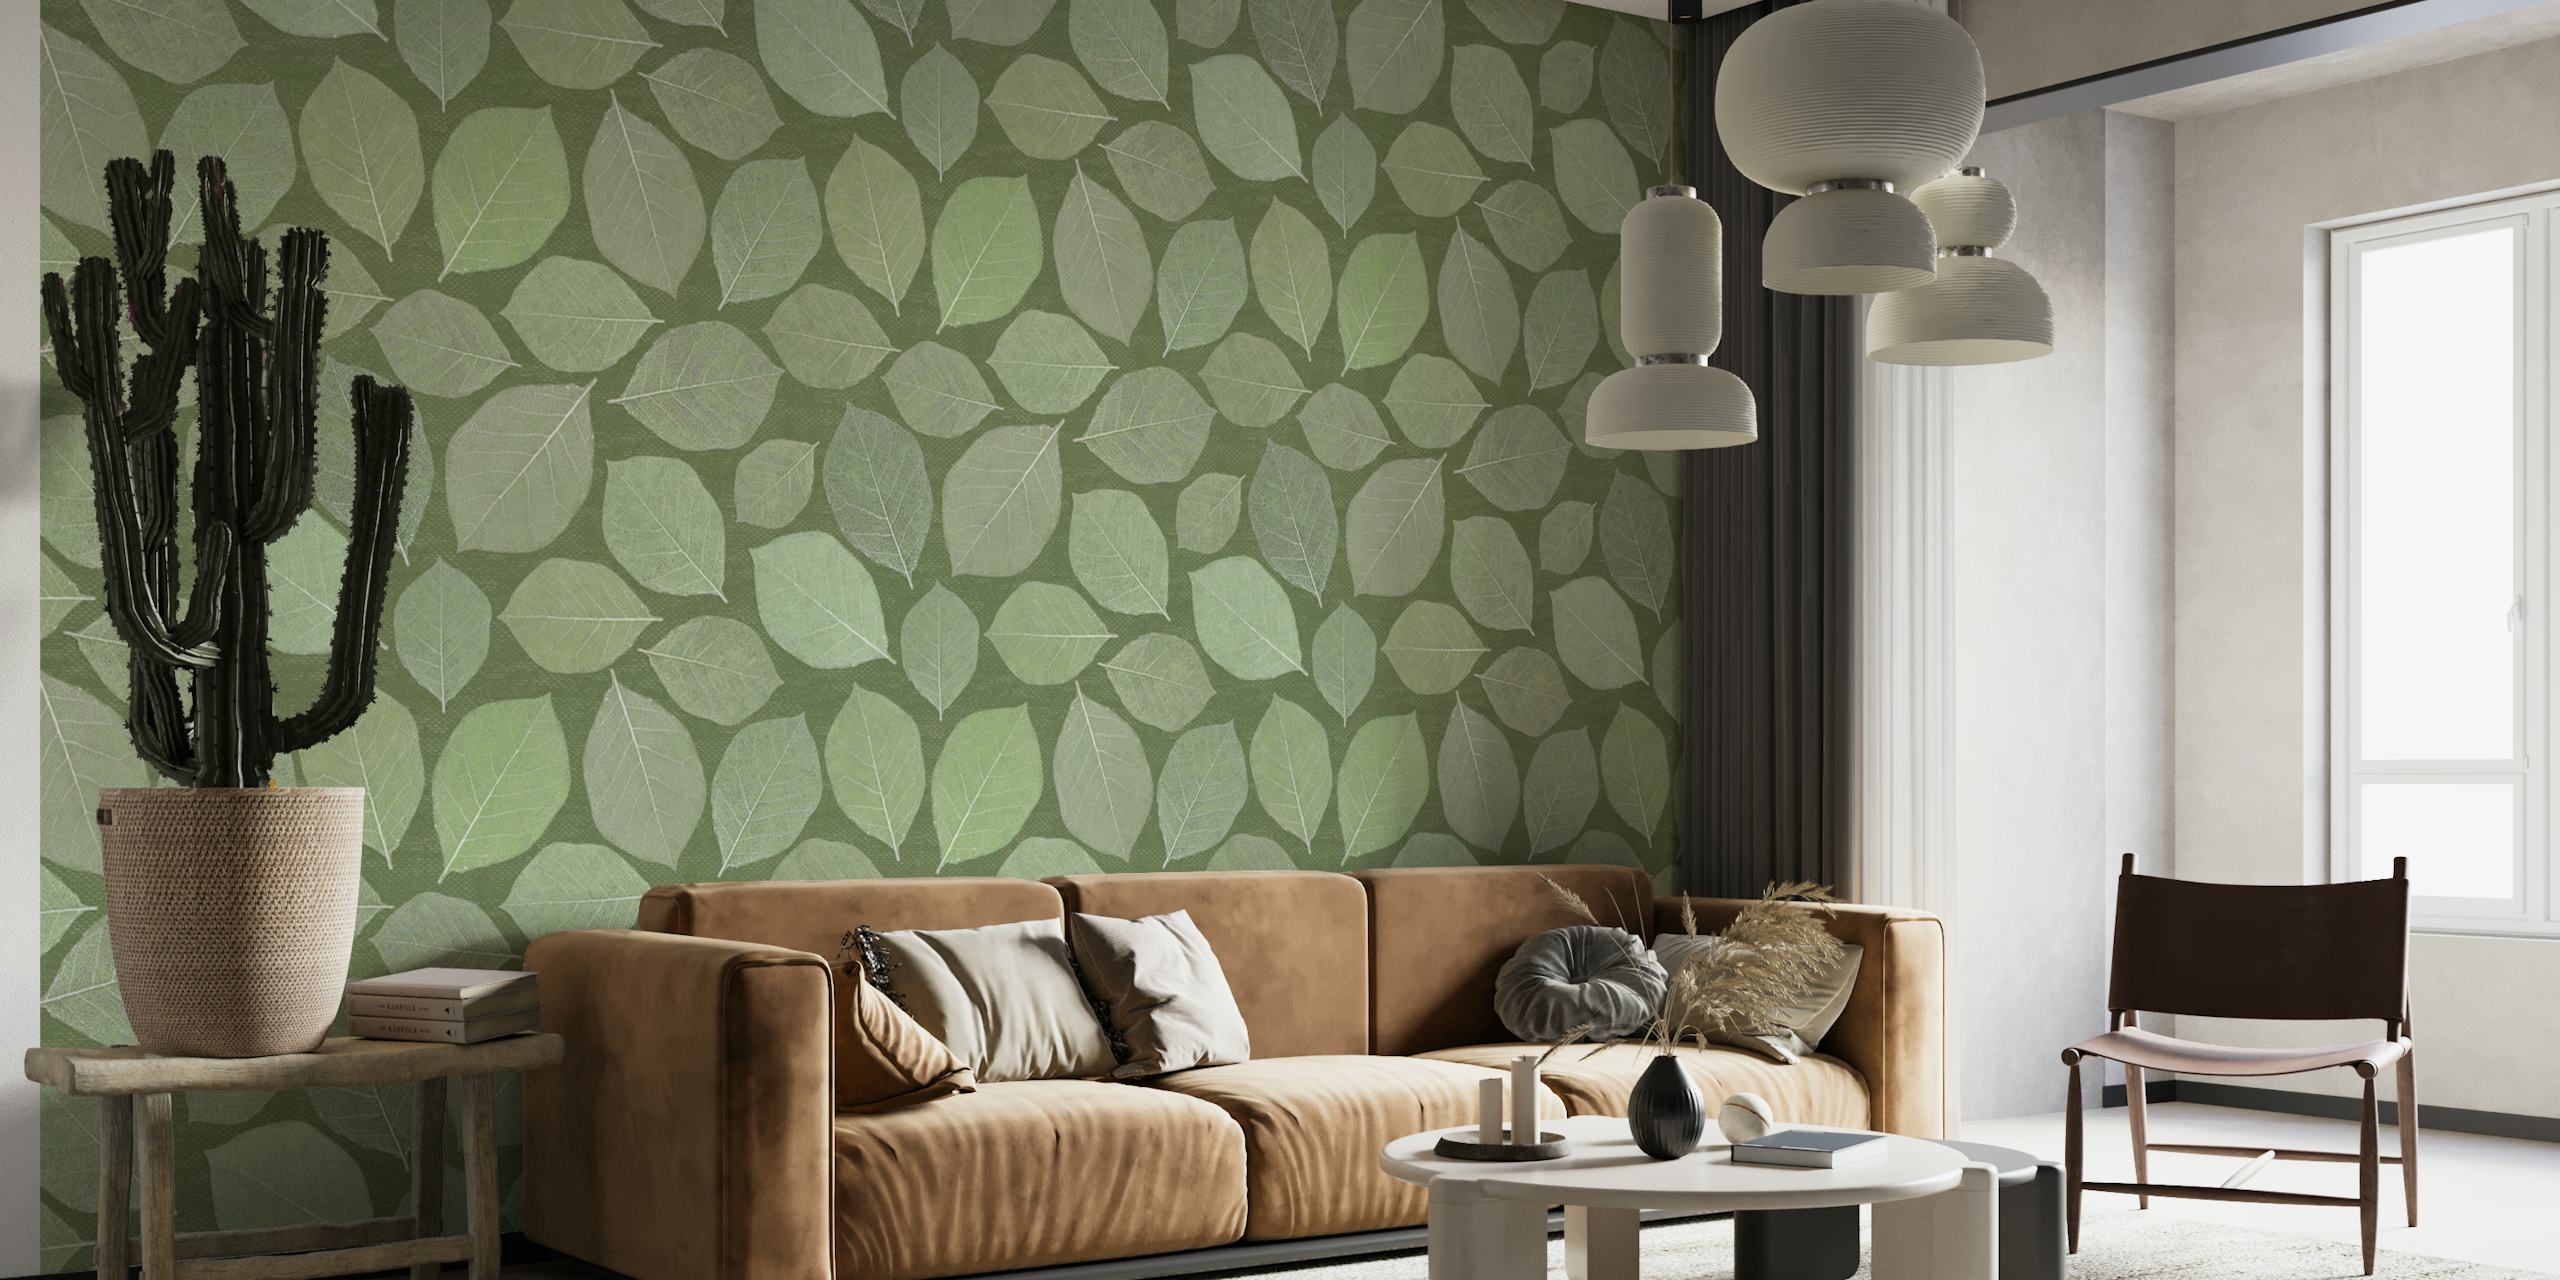 Murale murale de feuilles de magnolia dans différentes nuances de vert, parfaite pour une décoration intérieure tranquille